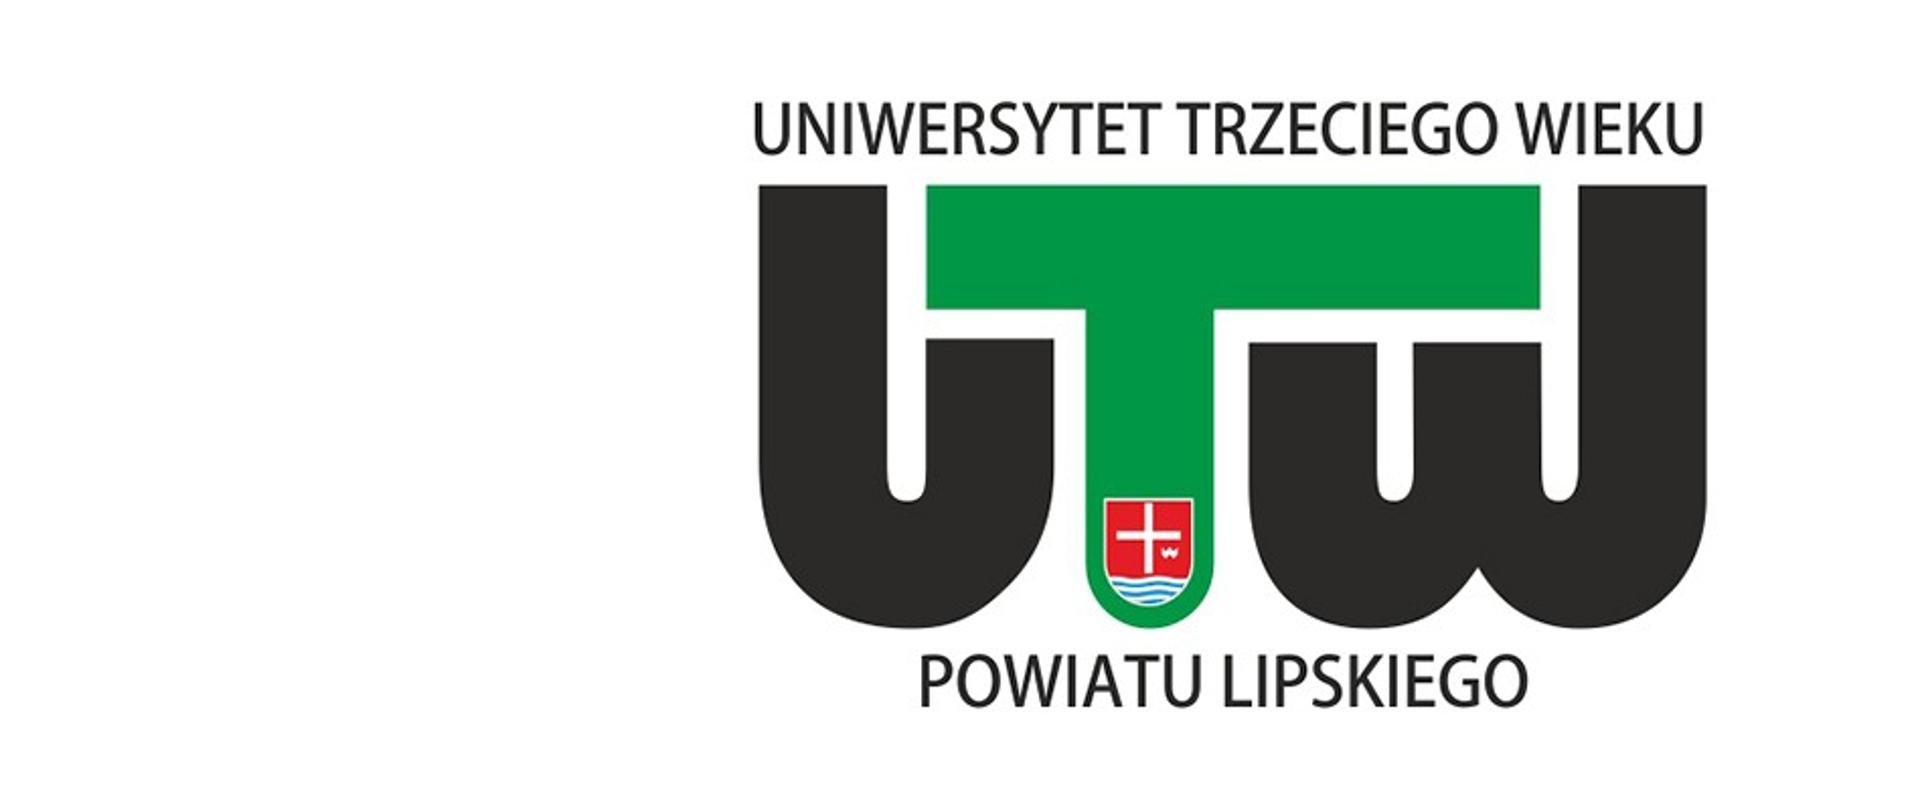 Logotyp Uniwersytetu Trzeciego Wieku Powiatu Lipskiego z nazwą Uniwersytetu zapisaną wielkimi literami oraz literami U T W. Litera T ma zieloną barwę, a na niej widnieje herb Powiatu Lipskiego